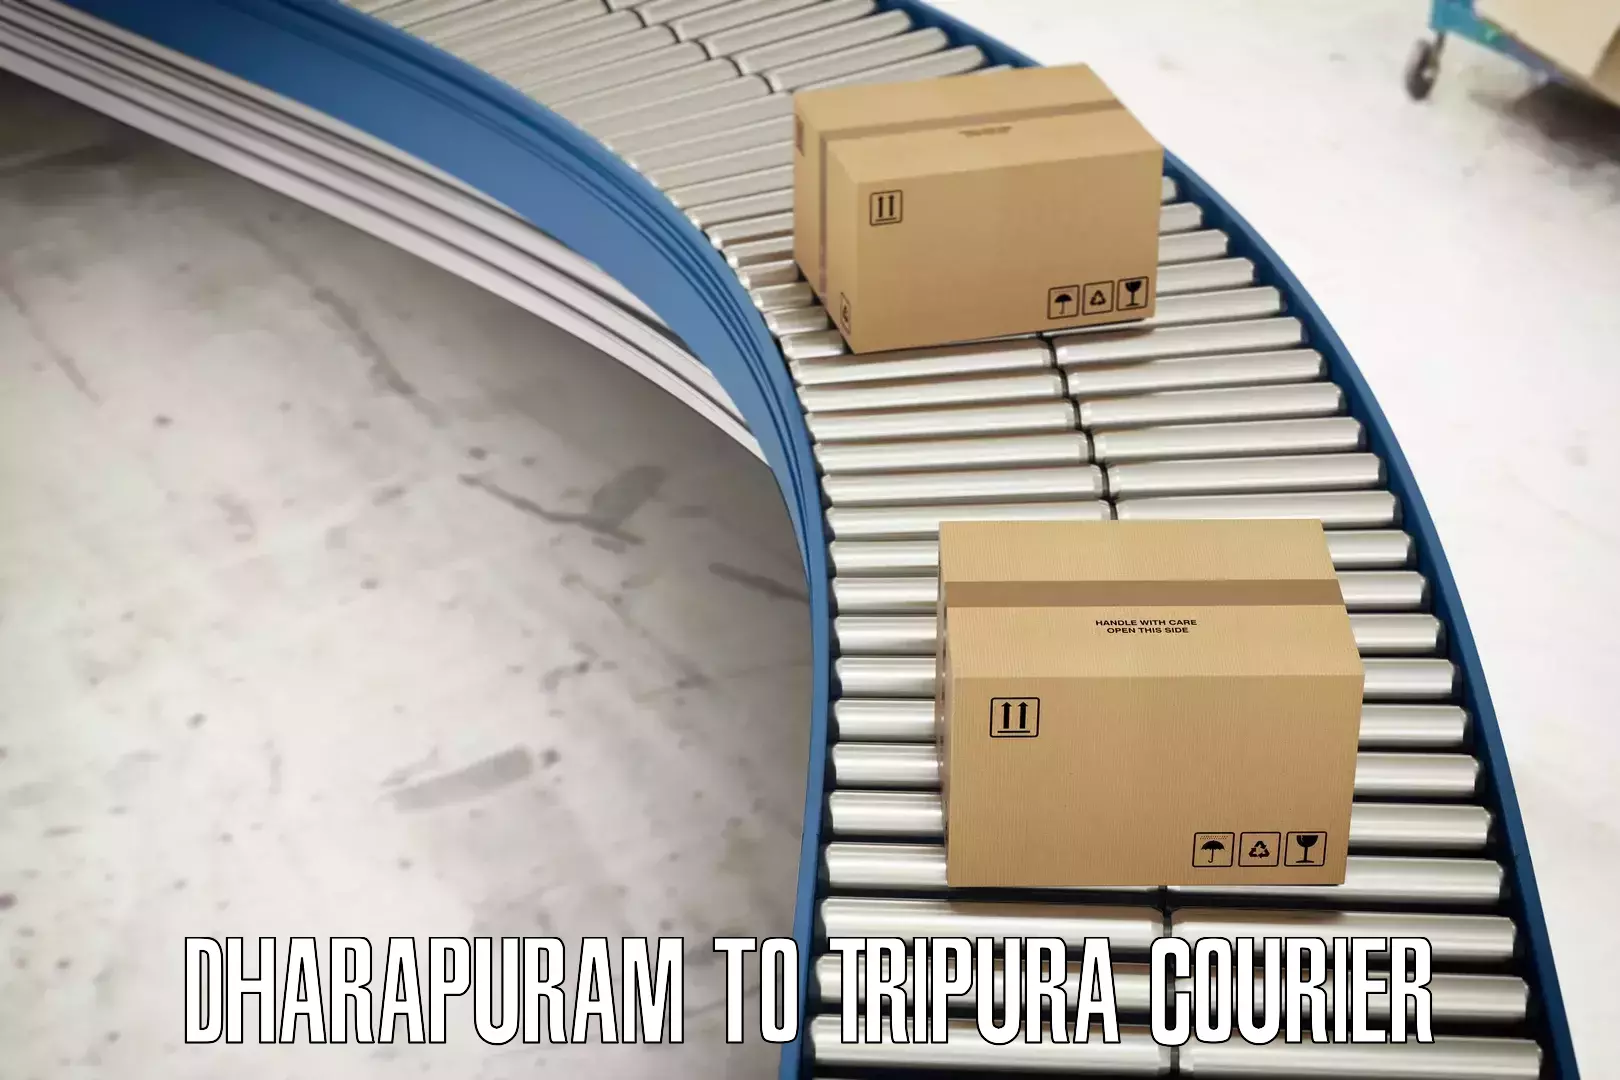 Comprehensive logistics solutions Dharapuram to Amarpur Gomati